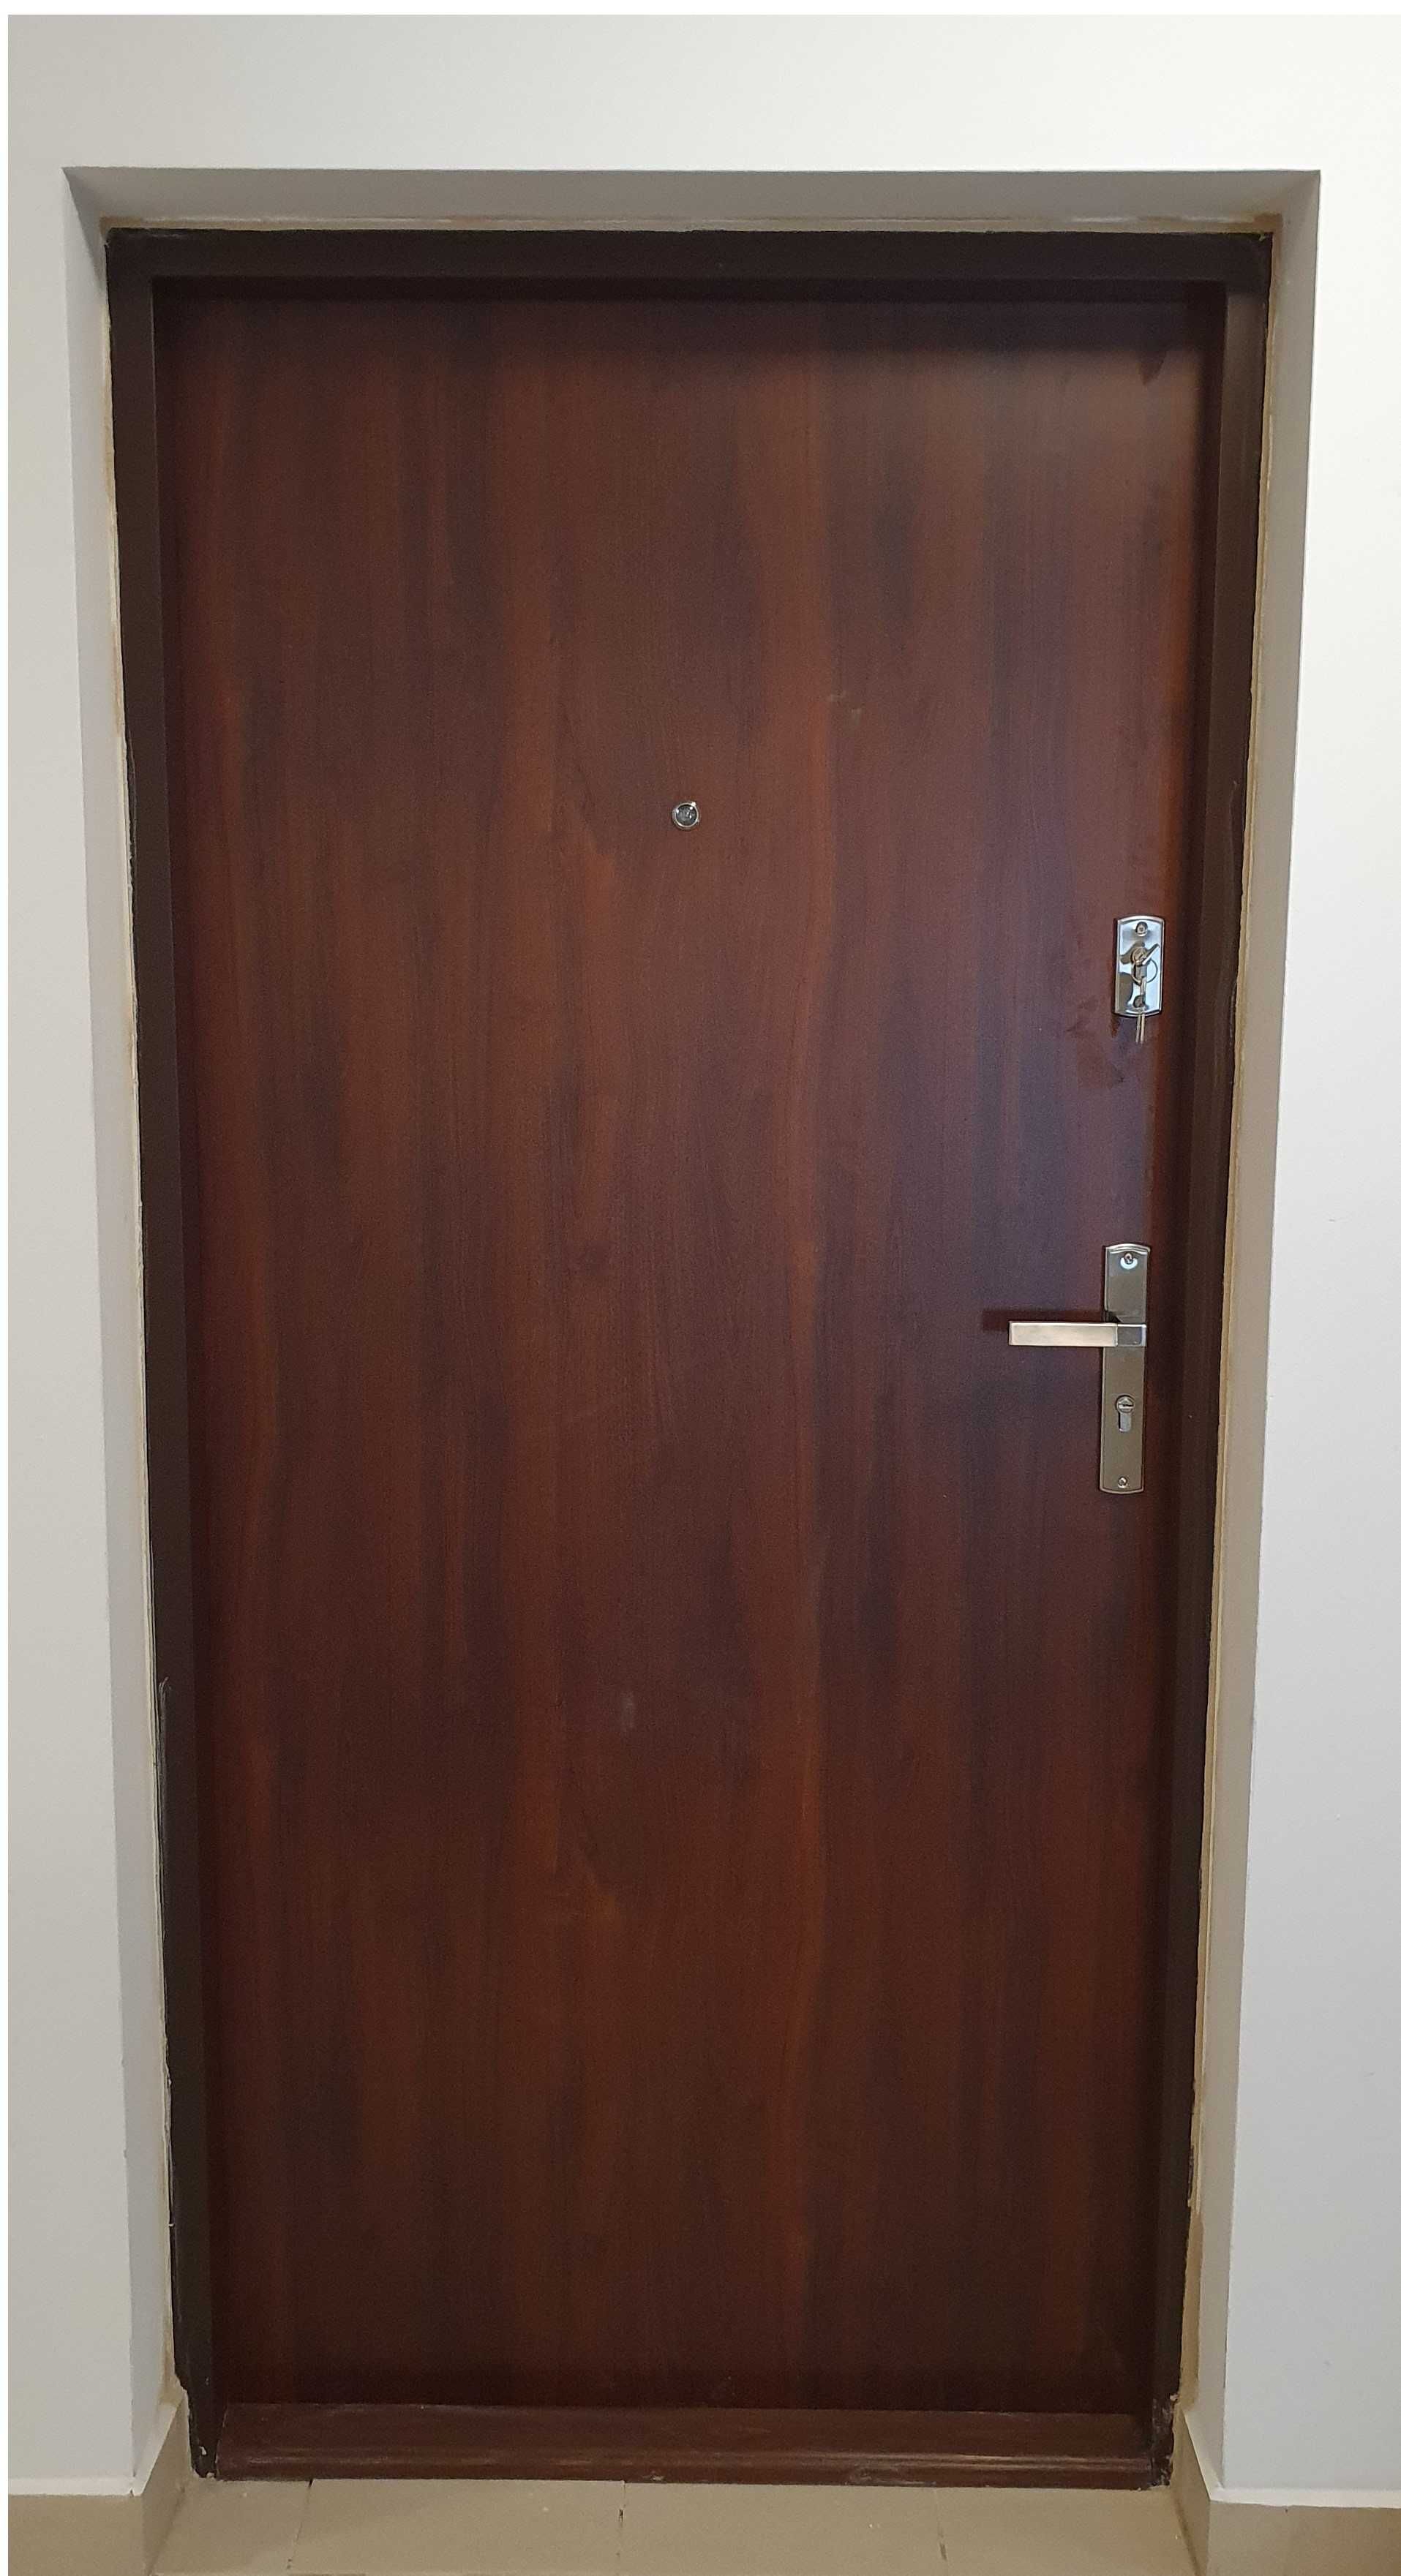 Drzwi zewnętrzne do mieszkań wyciszone antywłamaniowe z montażem